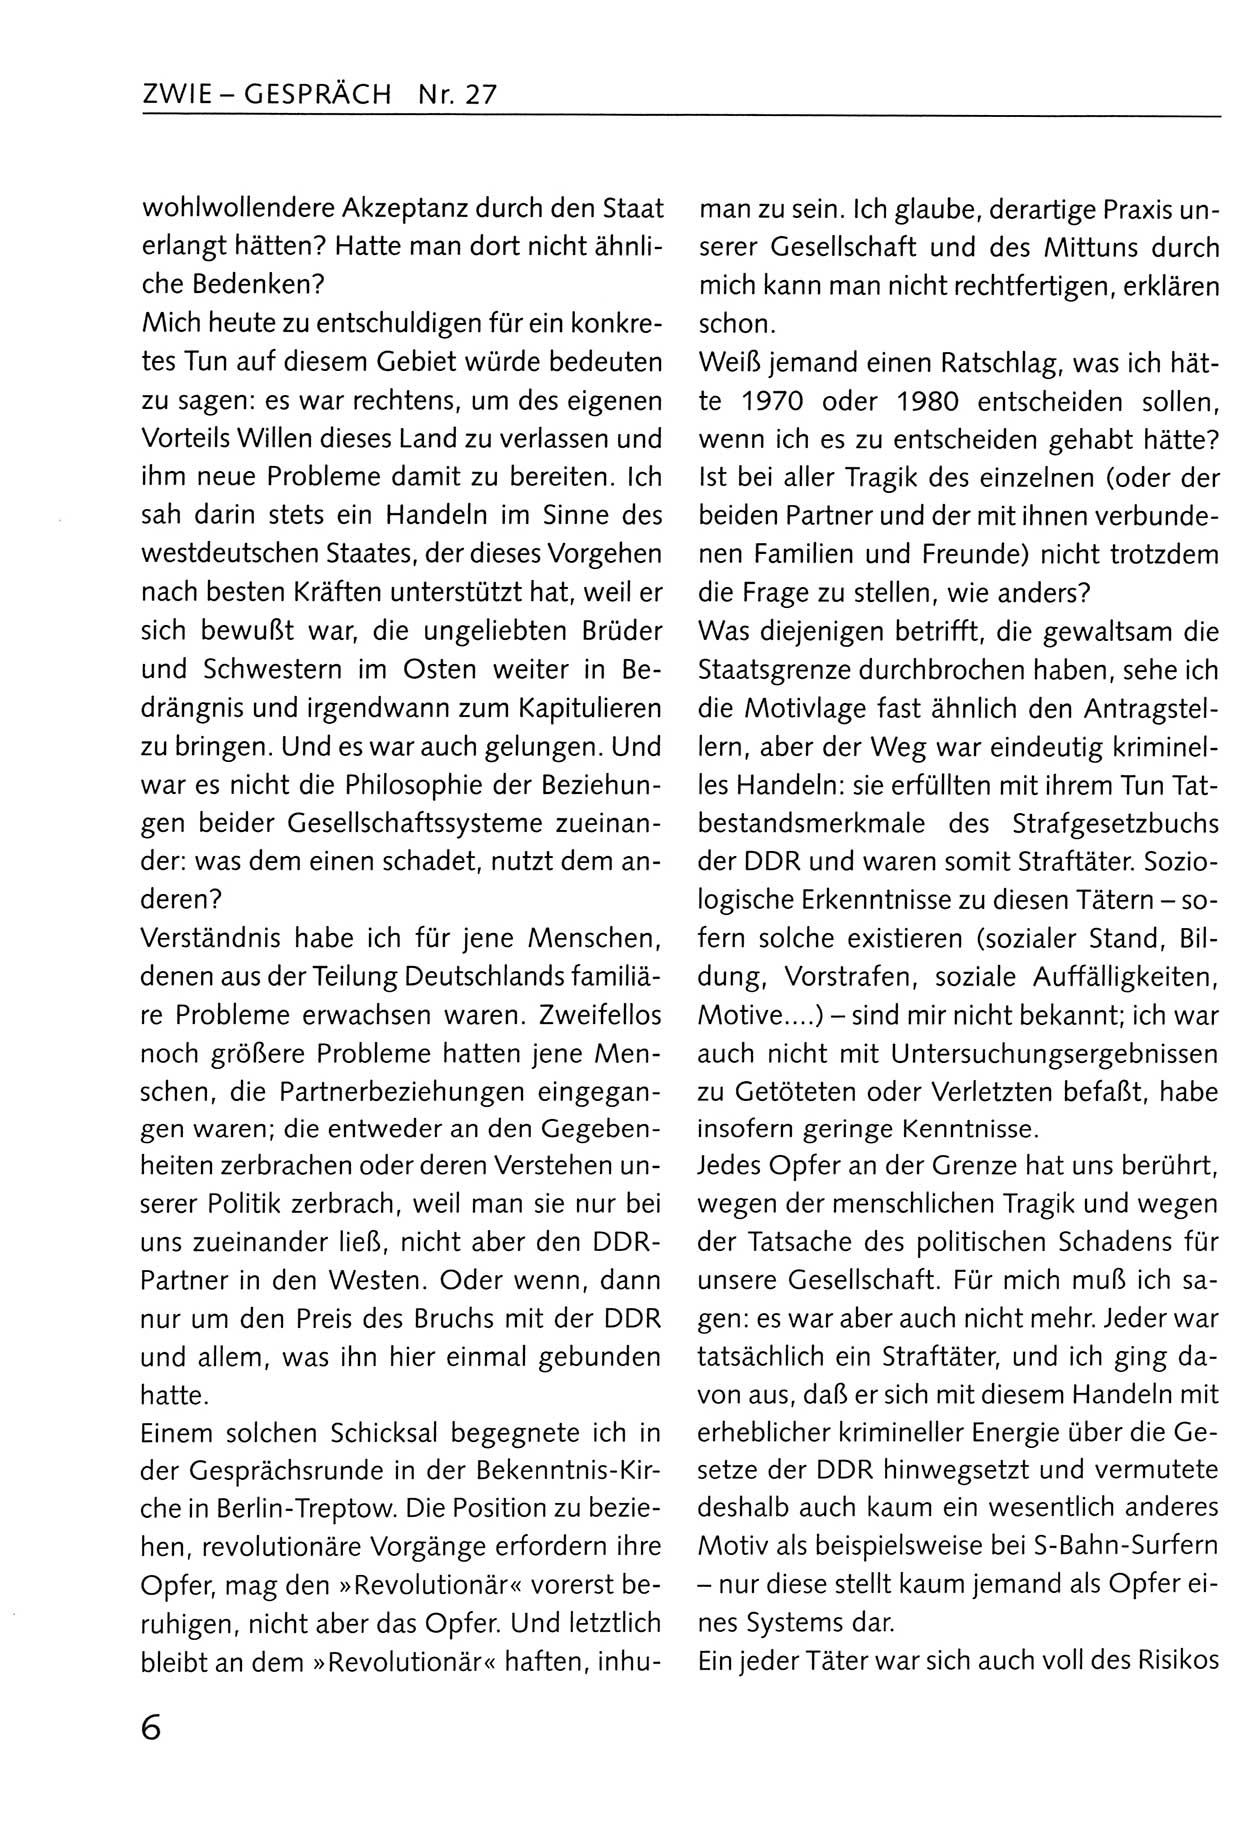 Zwie-Gespräch, Beiträge zum Umgang mit der Staatssicherheits-Vergangenheit [Deutsche Demokratische Republik (DDR)], Ausgabe Nr. 27, Berlin 1995, Seite 6 (Zwie-Gespr. Ausg. 27 1995, S. 6)